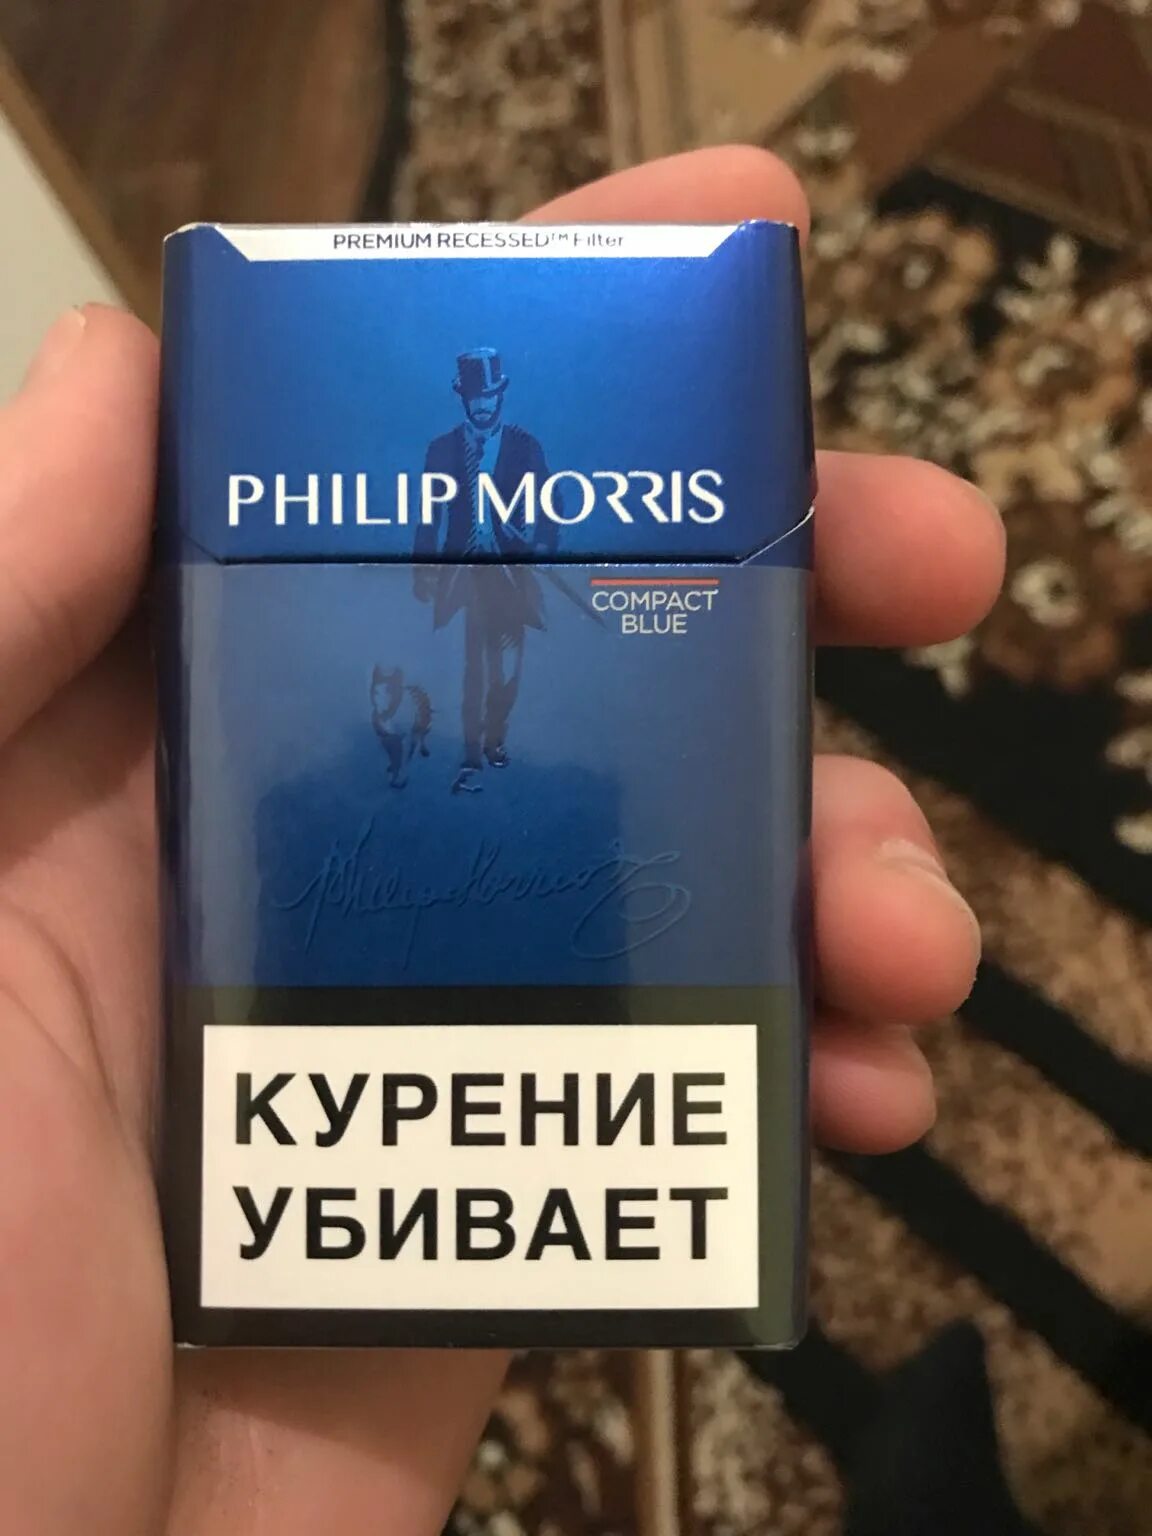 Филипс Морис компакт Блю. Сигареты с фильтром "Philip Morris Compact Blue". Филип компакт сигареты